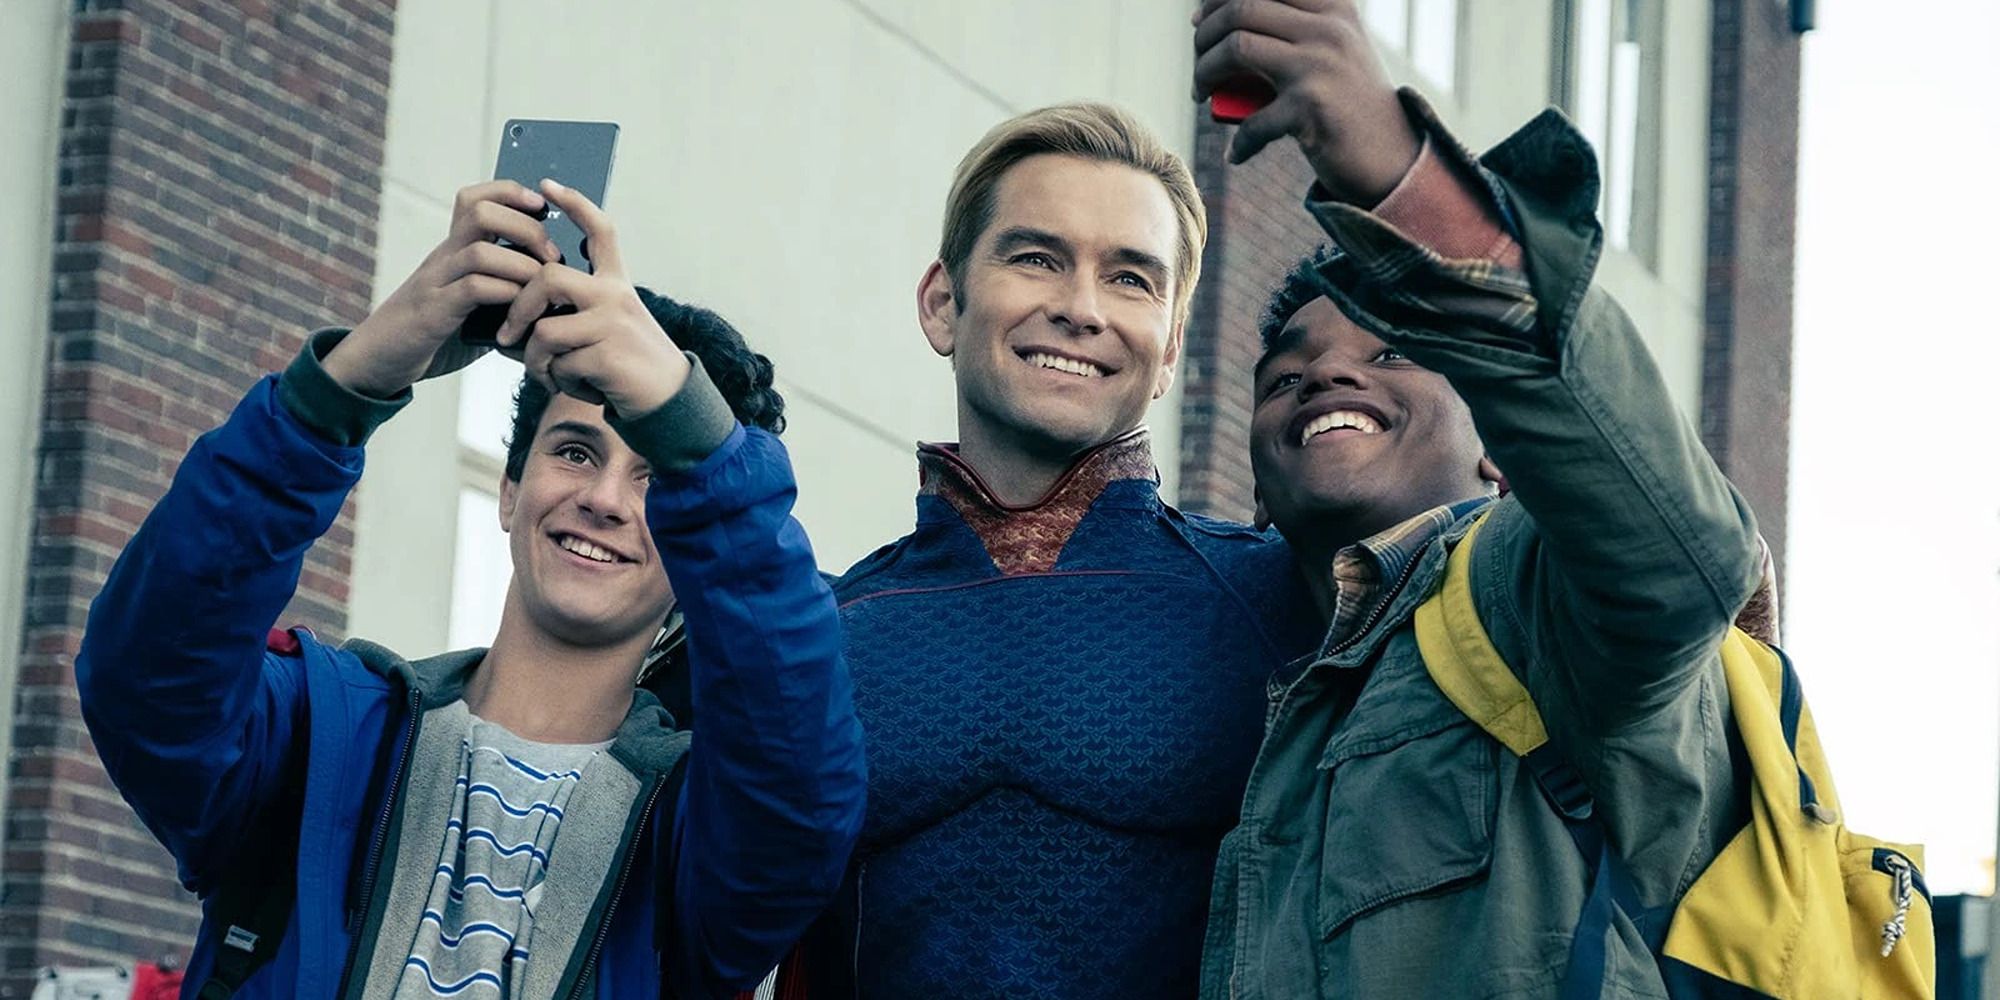 Homelander smiling between two teens taking a selfie with him